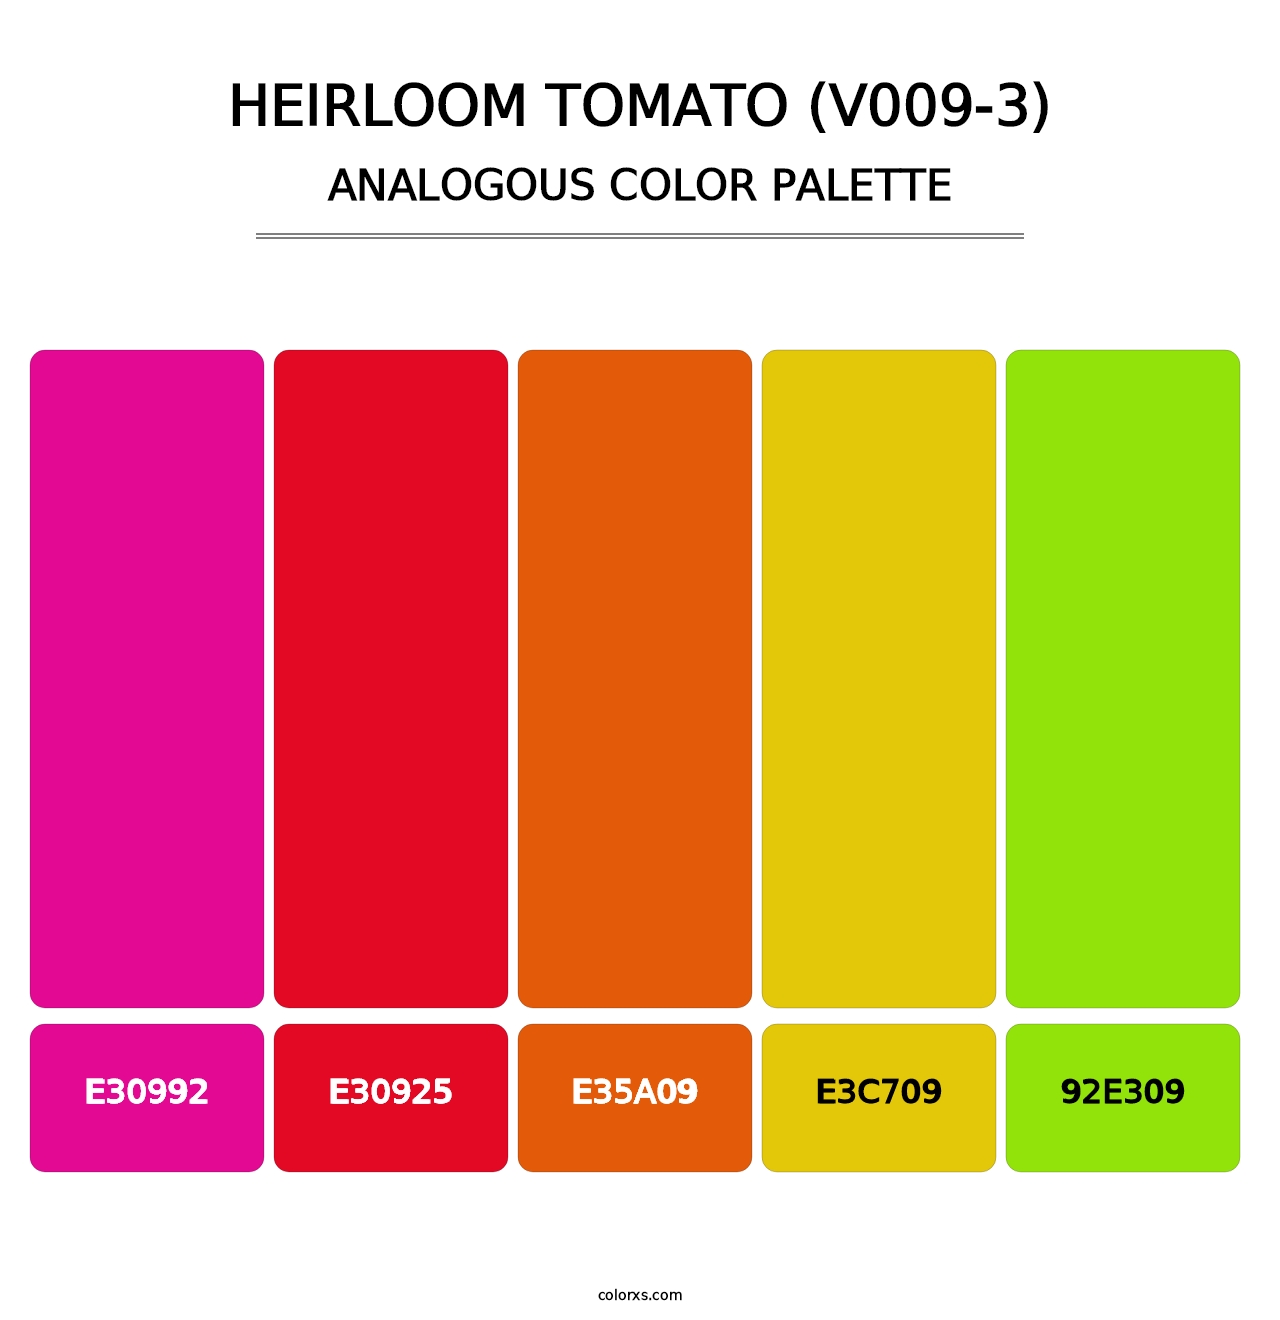 Heirloom Tomato (V009-3) - Analogous Color Palette